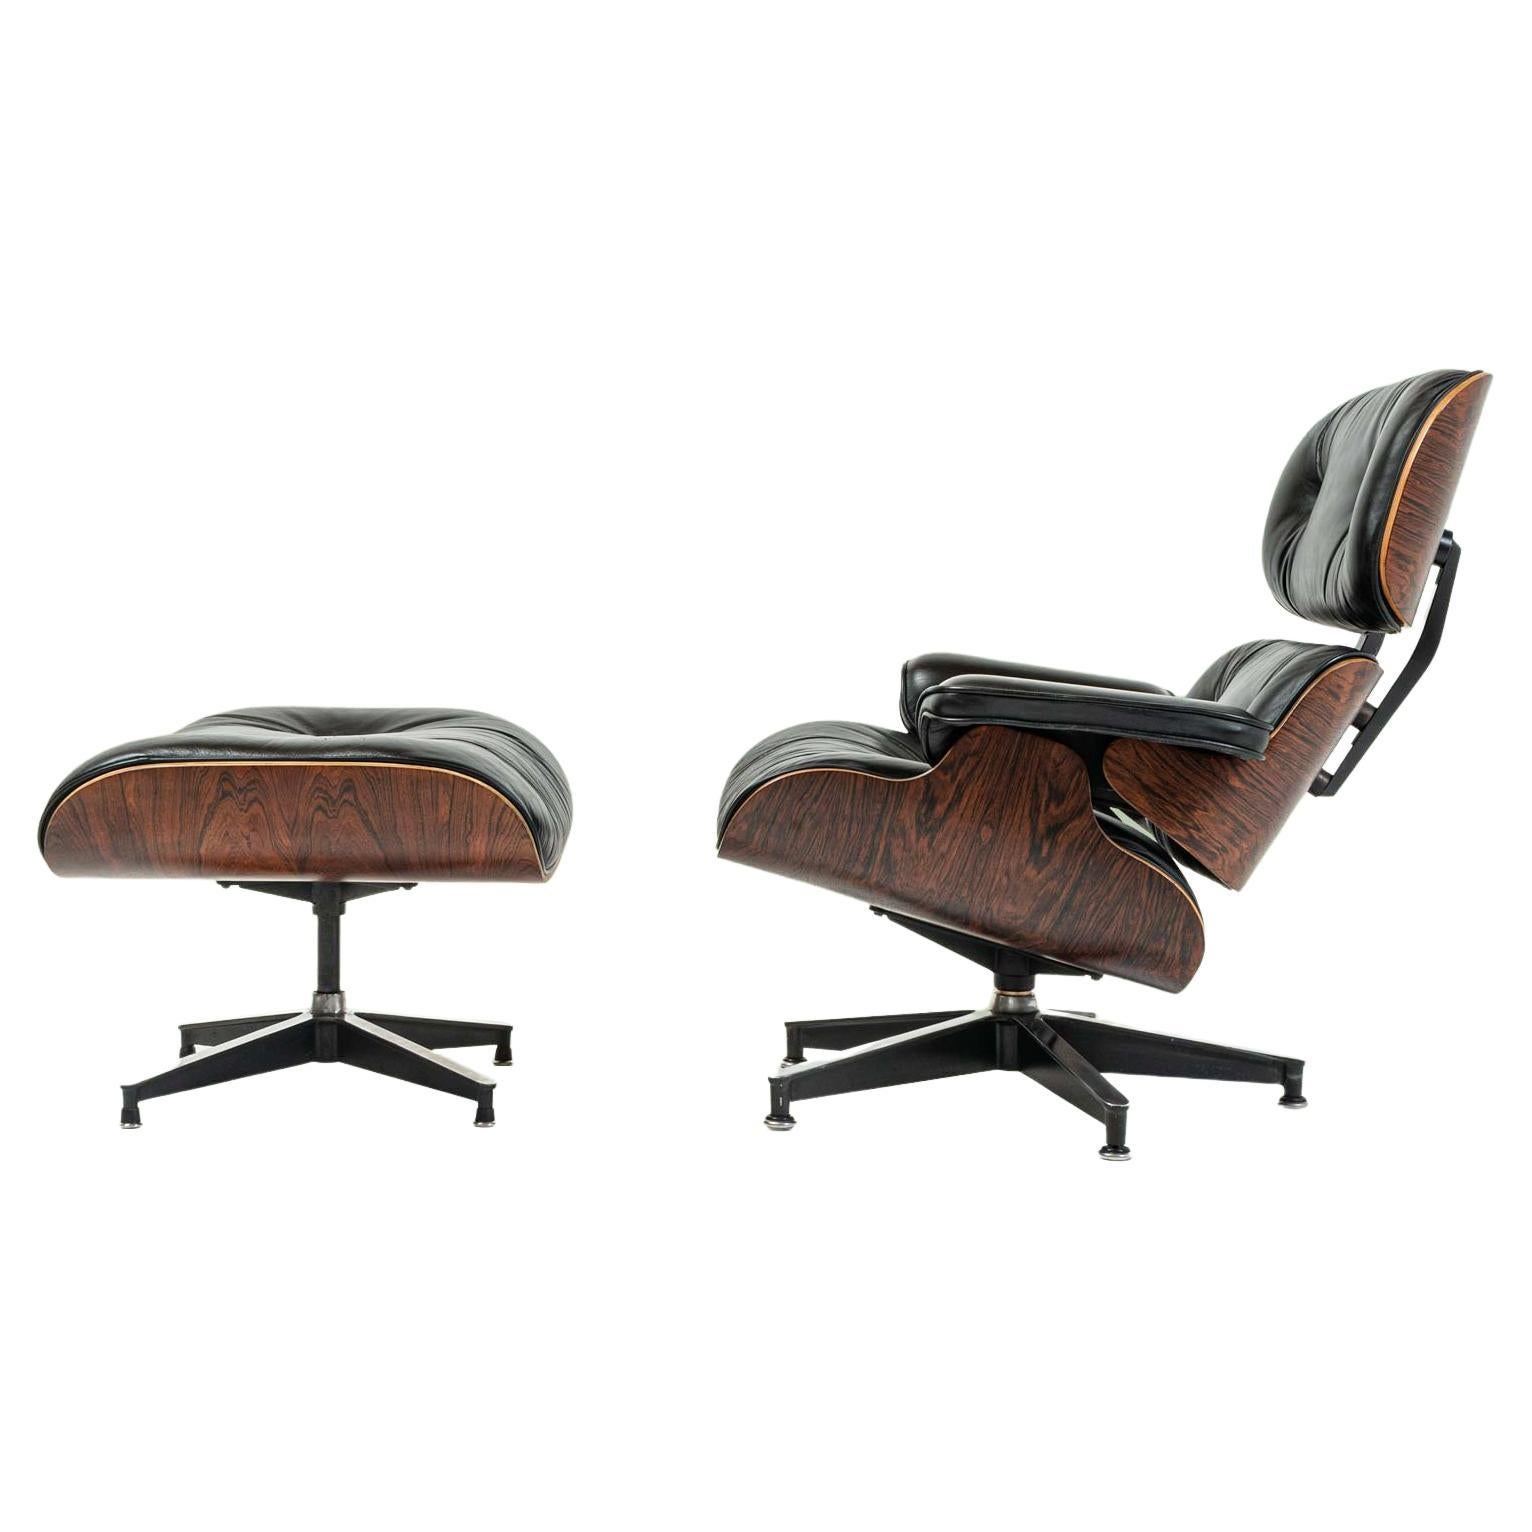 Fauteuil lounge chair Eames édition Herman Miller - L'Atelier 50